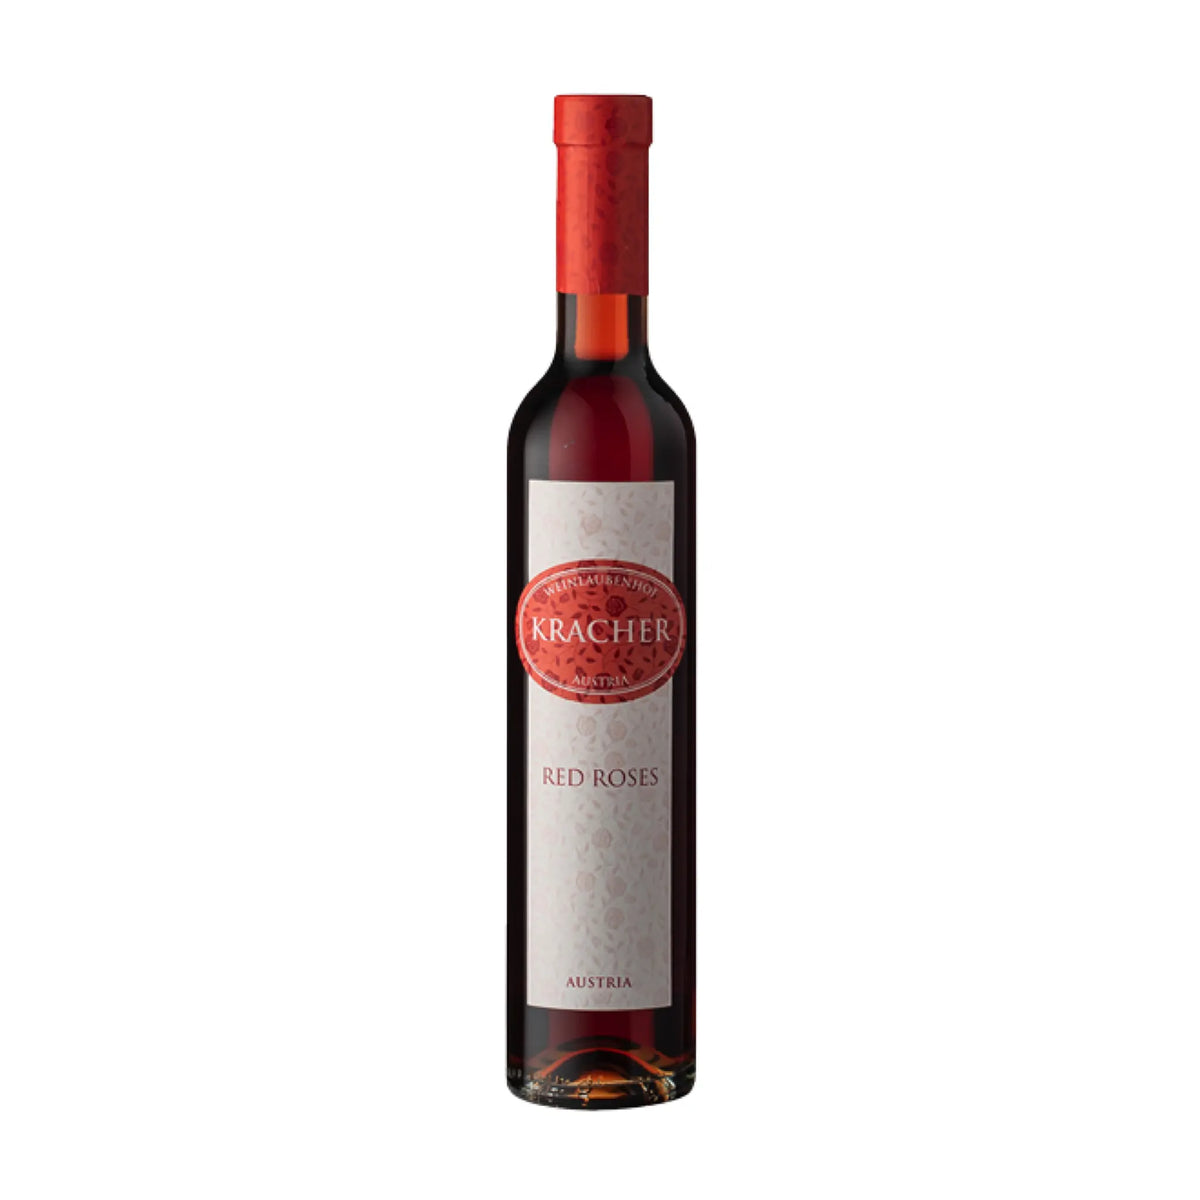 Weinlaubenhof Kracher-Süßwein-Chardonnay, Pinot Blanc, Welschriesling-2020 Beerenauslese Red Roses-WINECOM